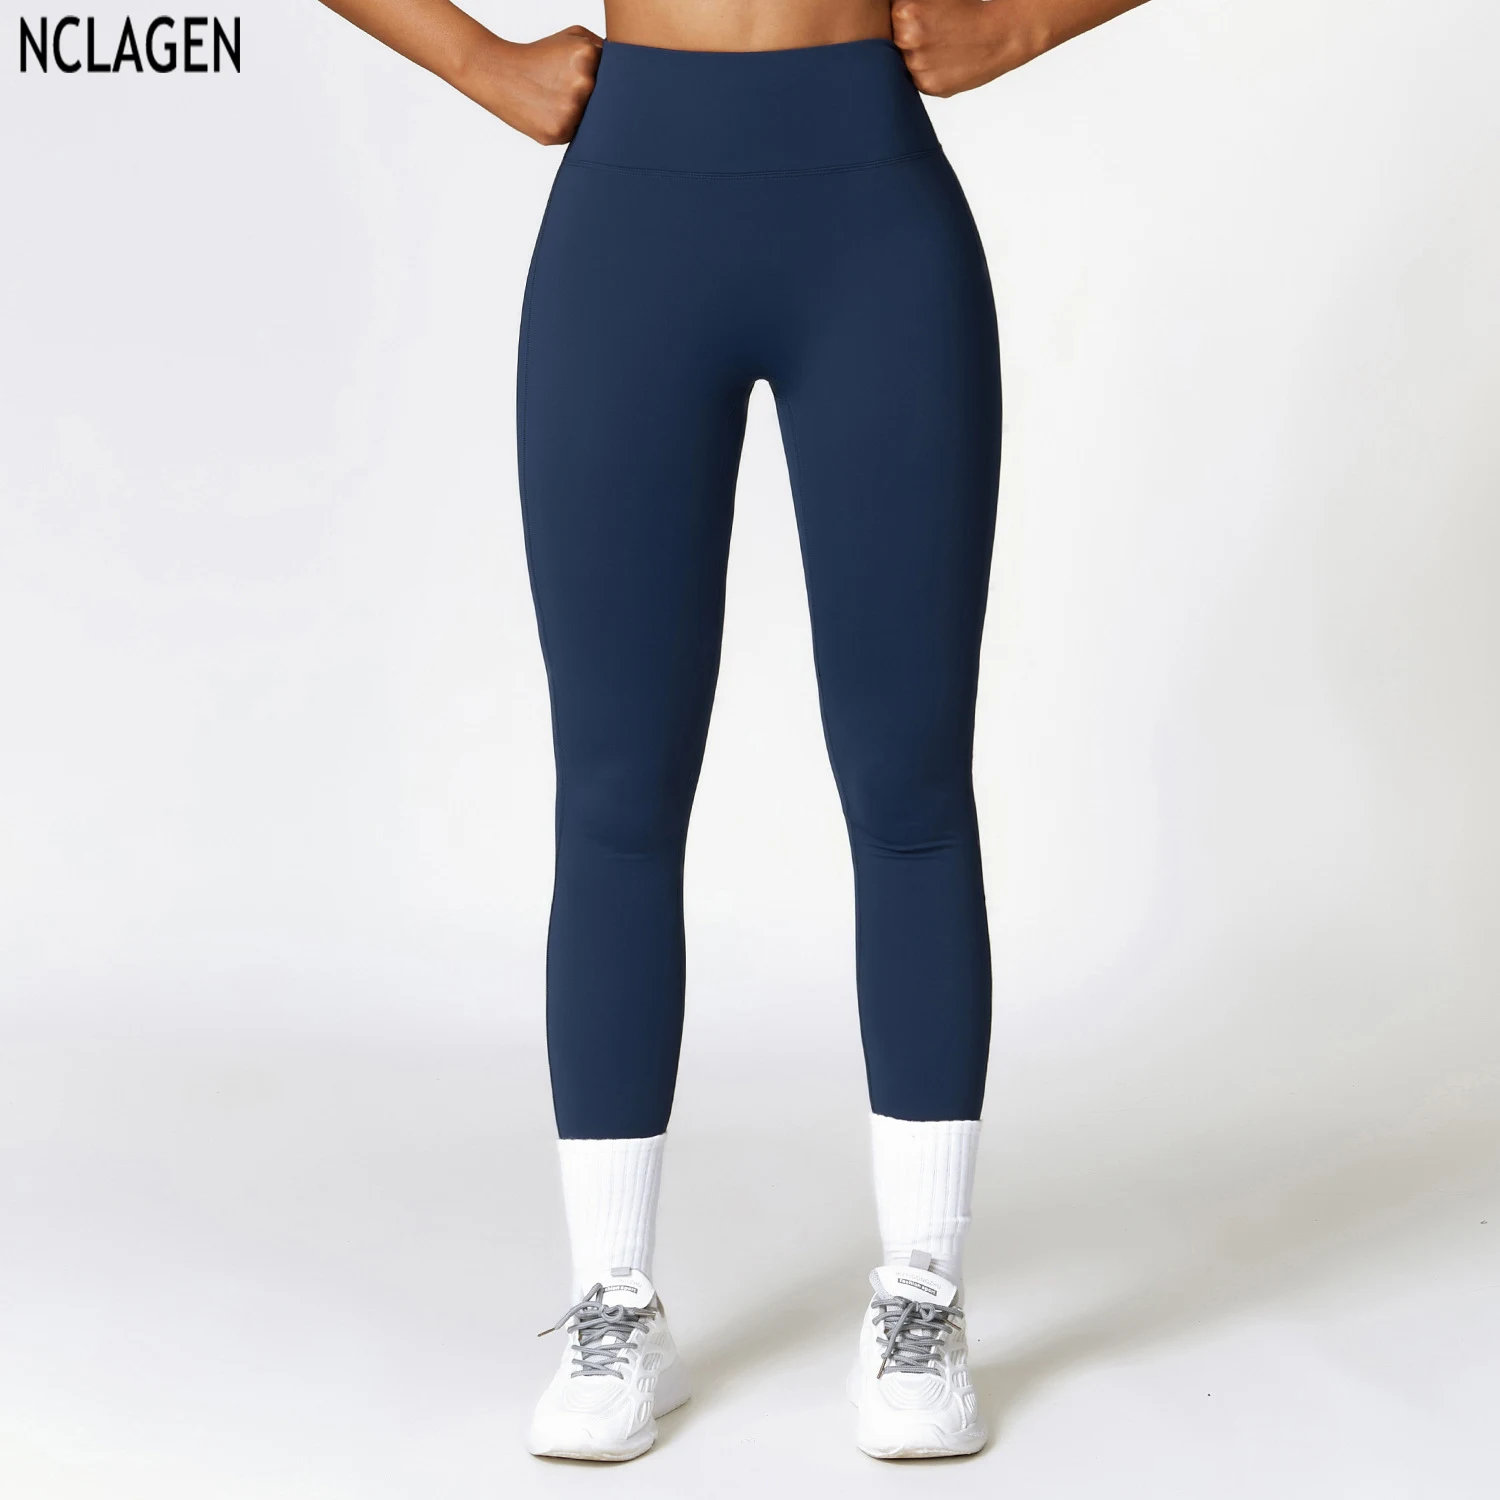 

NCLAGEN штаны для йоги с высокой талией женские зимние теплые колготки для подтяжки бедер для бега флисовые термальные спортивные Леггинсы для фитнеса тренировок в тренажерном зале